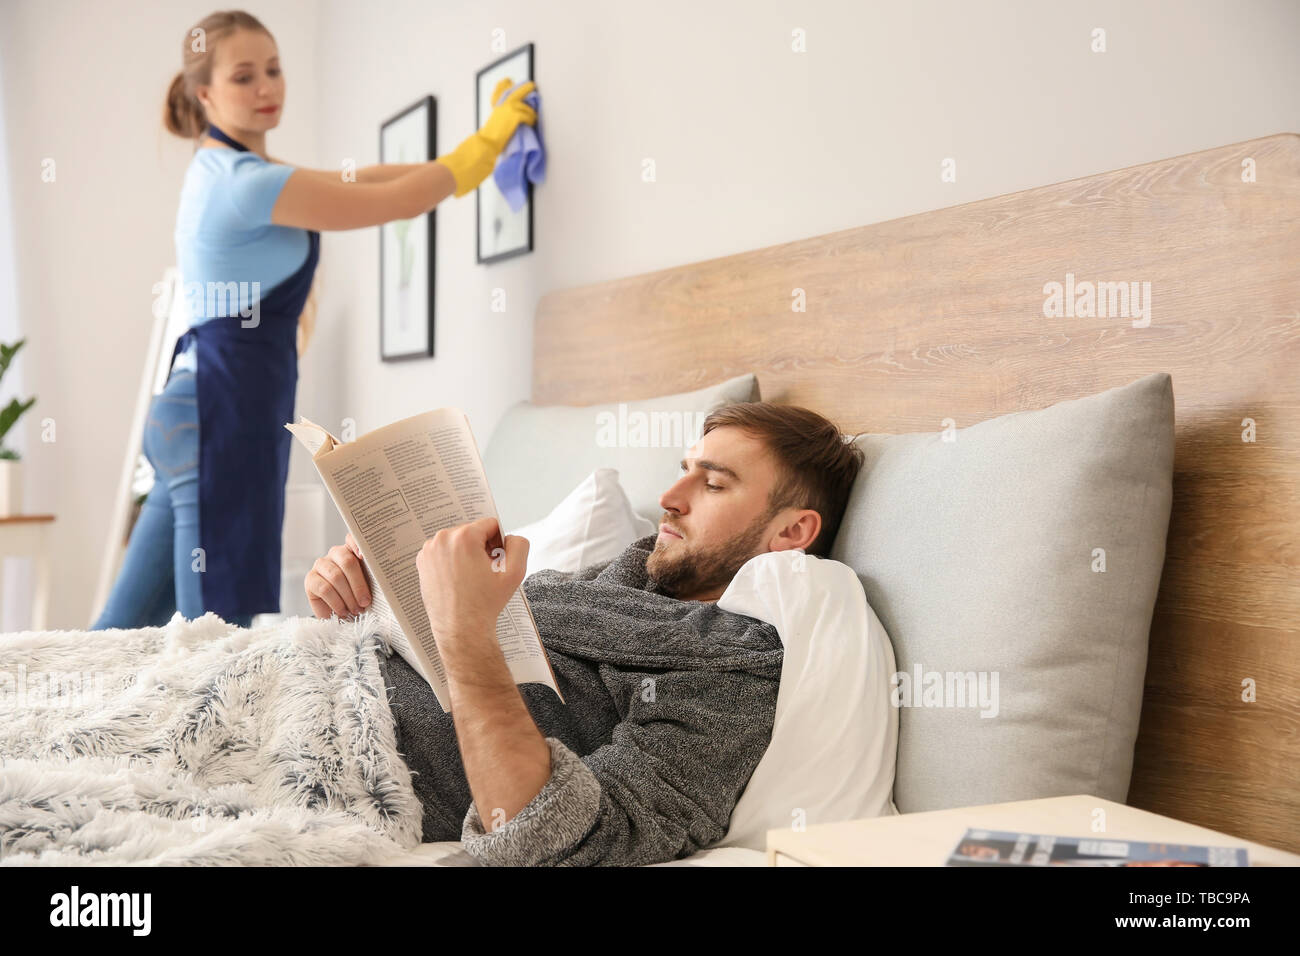 Faul mann lesen Zeitung, während seine Frau tut Chores zu Hause Stockfoto